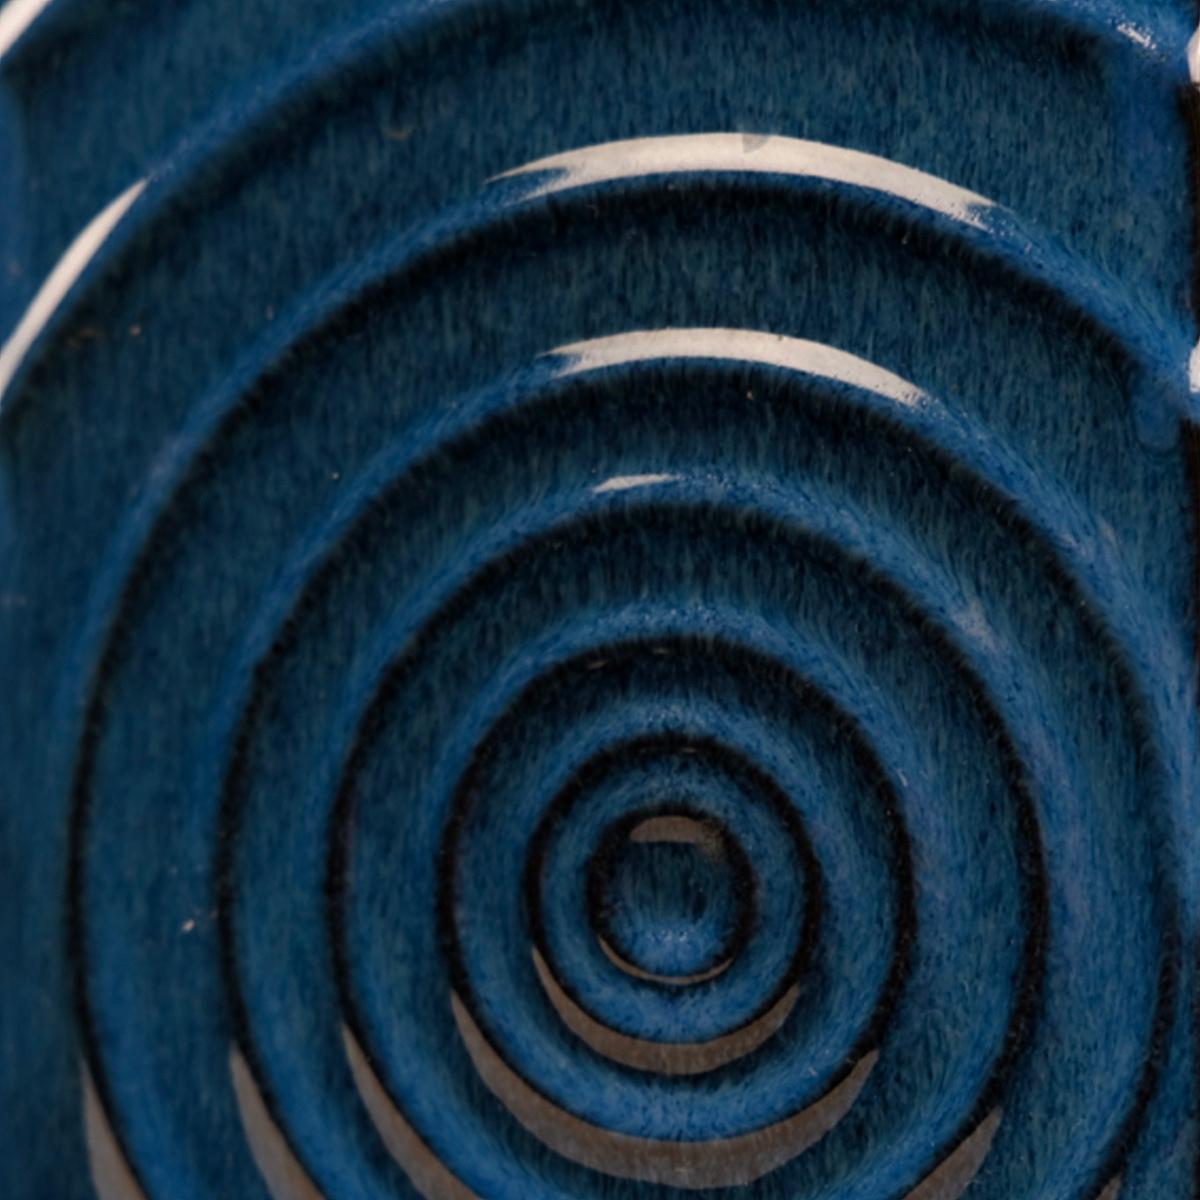 Satz von 3 Cari Zalloni für Steuler Keramik blau-schwarz 